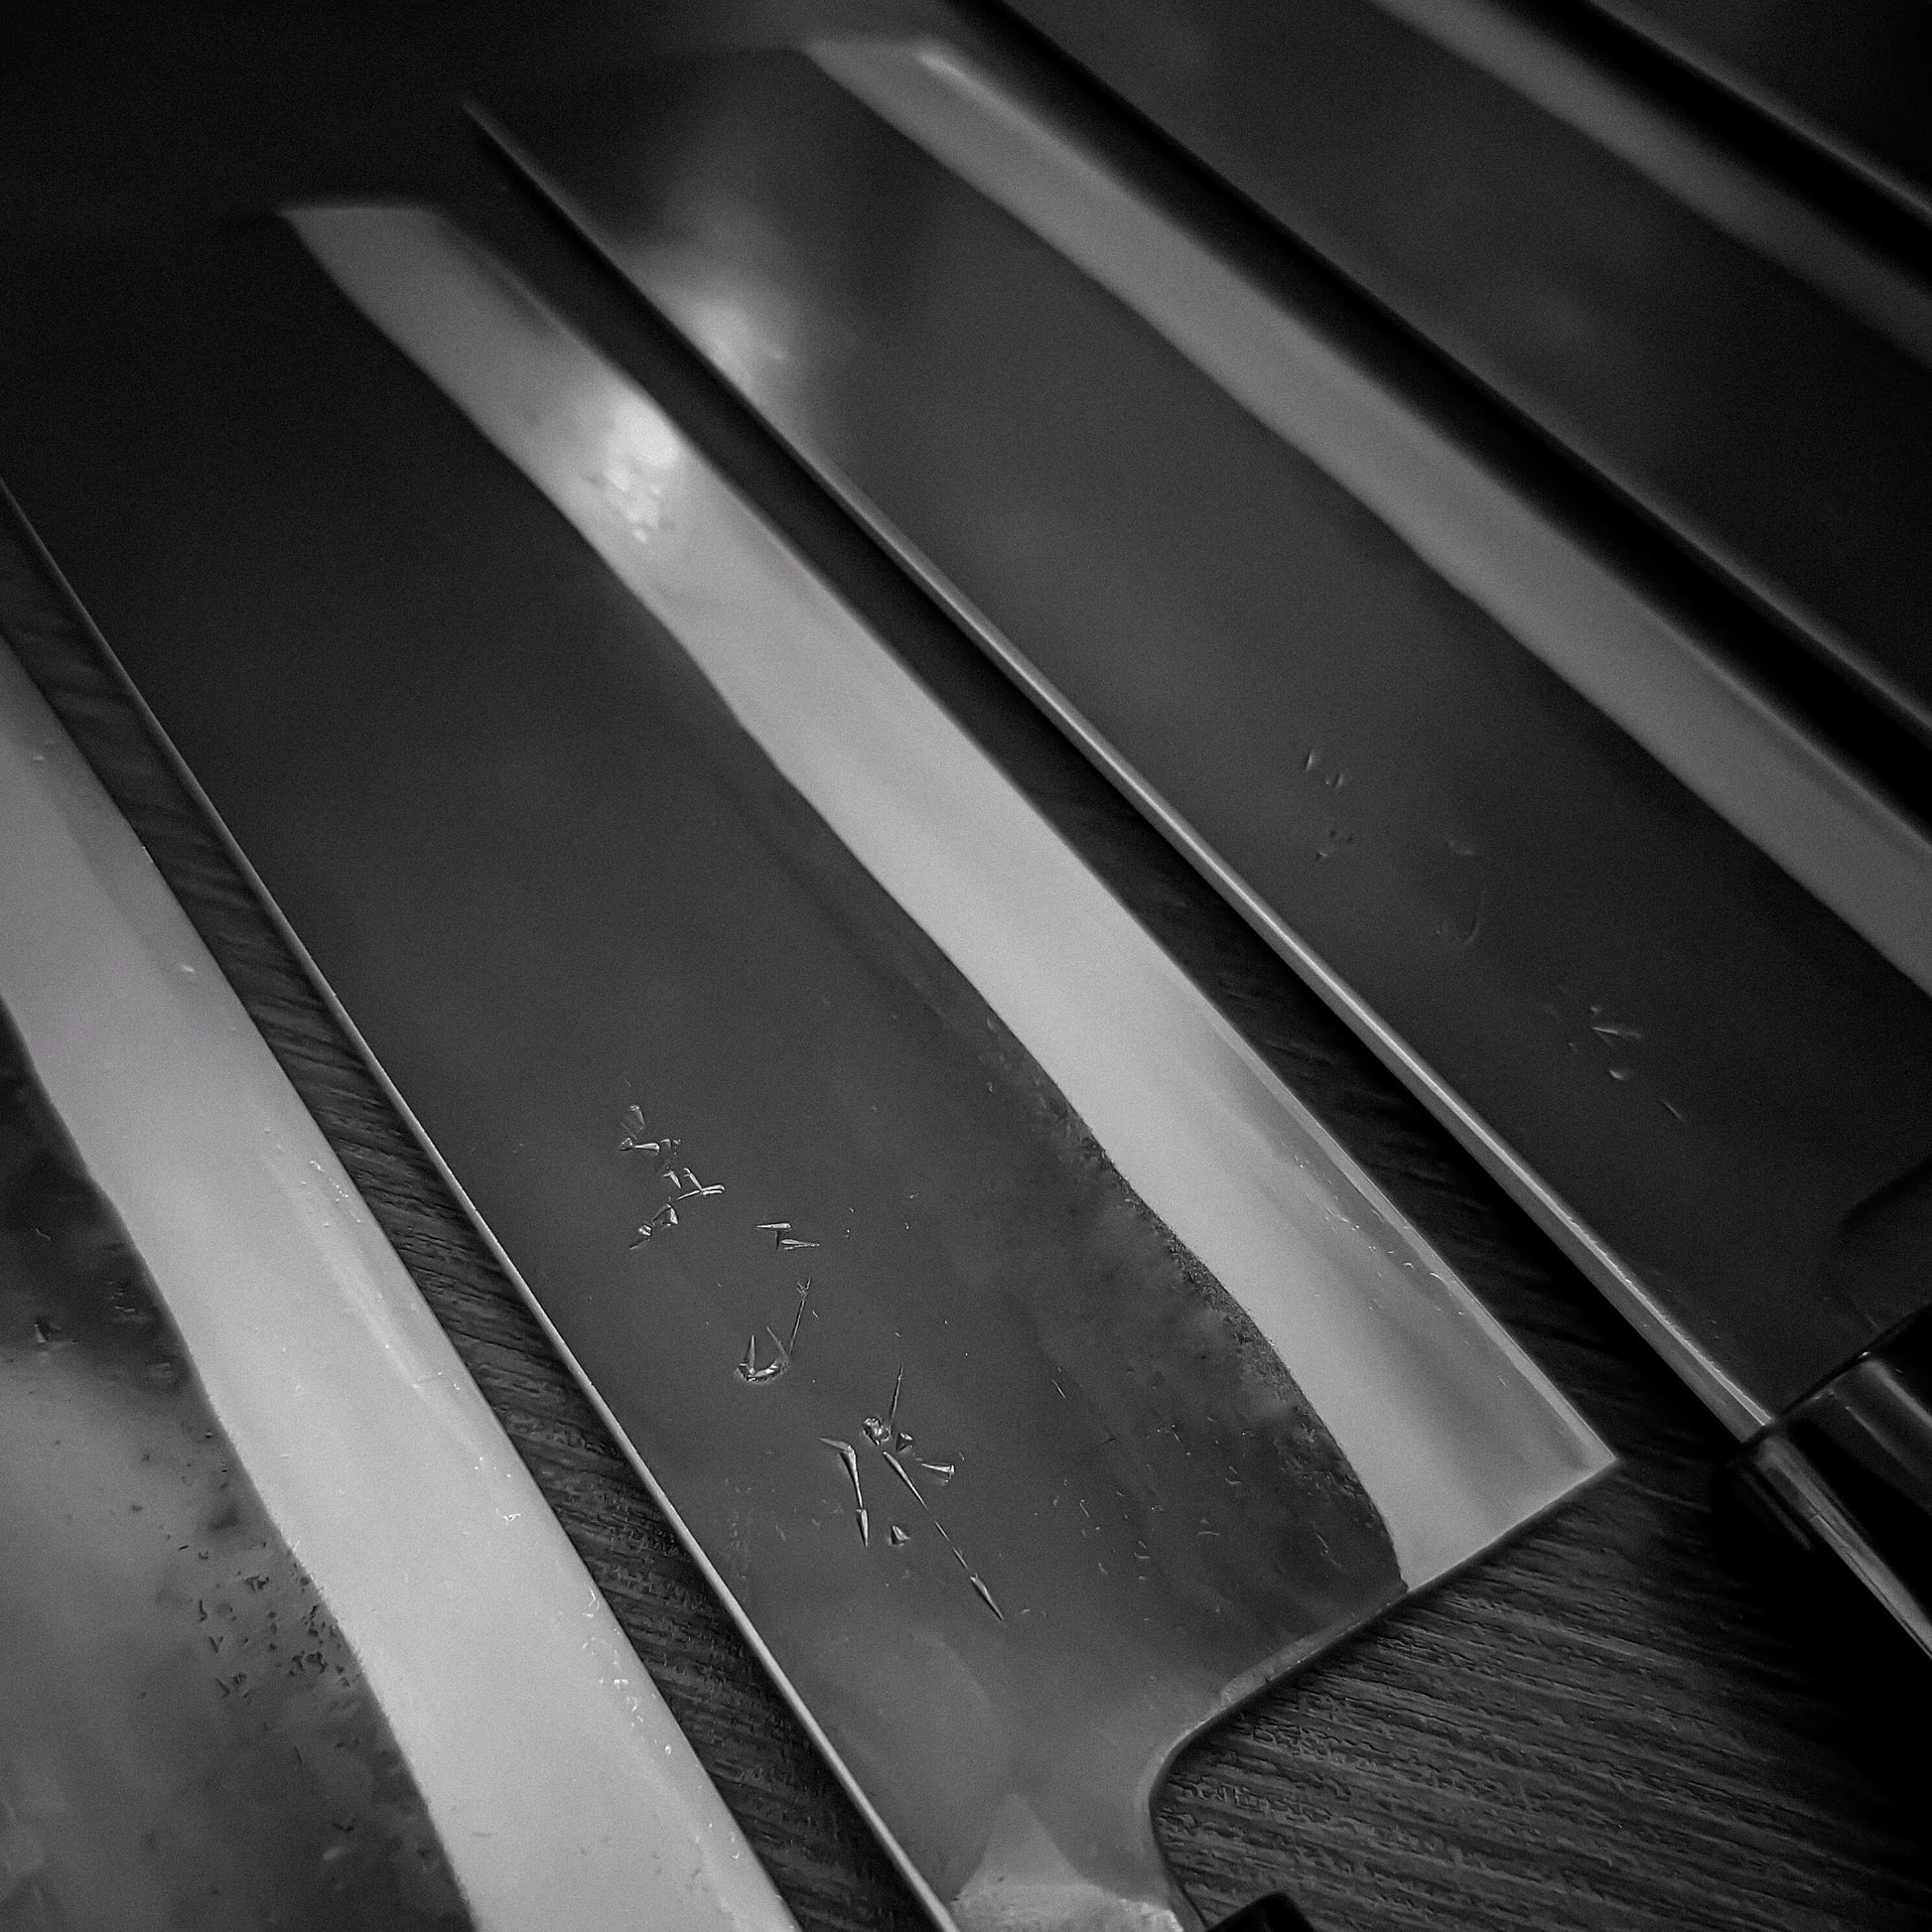 Watanabe Pro aogami #2 kurouchi 180mm nakiri - Zahocho Japanese Knives